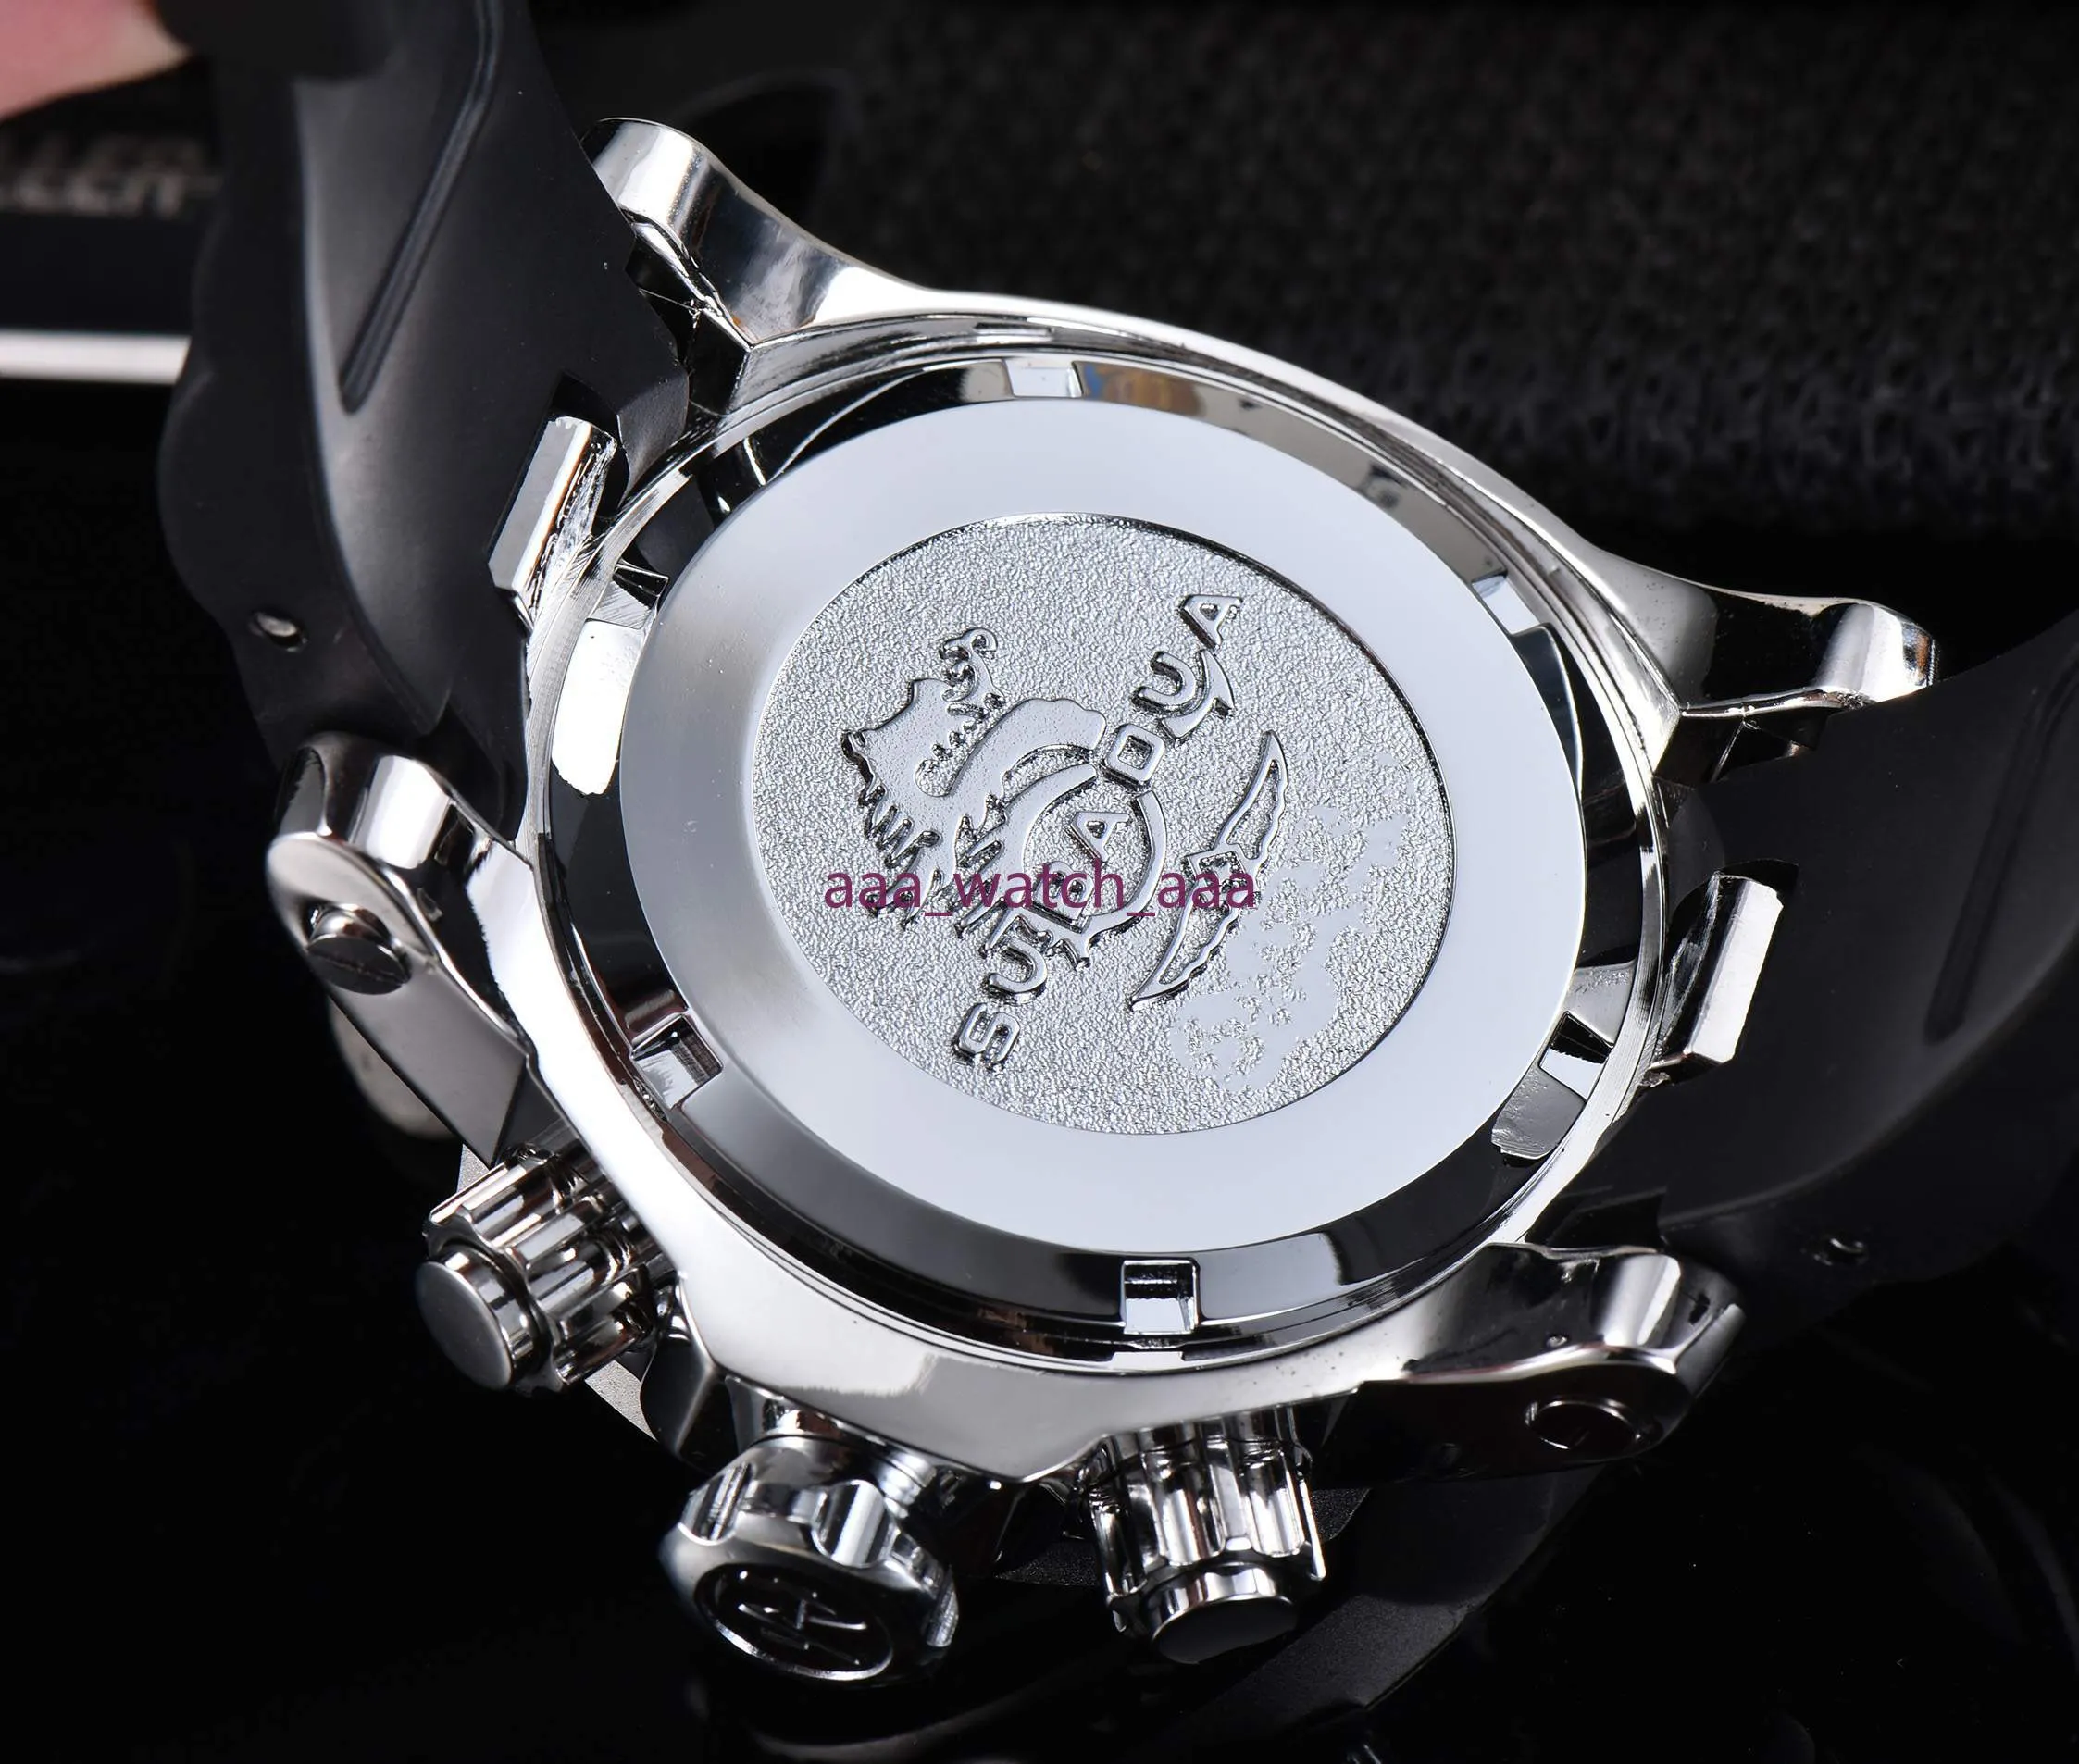 2021 ta novo luxo relógios esportivos masculinos série palhaço quartzo dourado relógio masculino calendário pulseira de silicone relógio de pulso301a